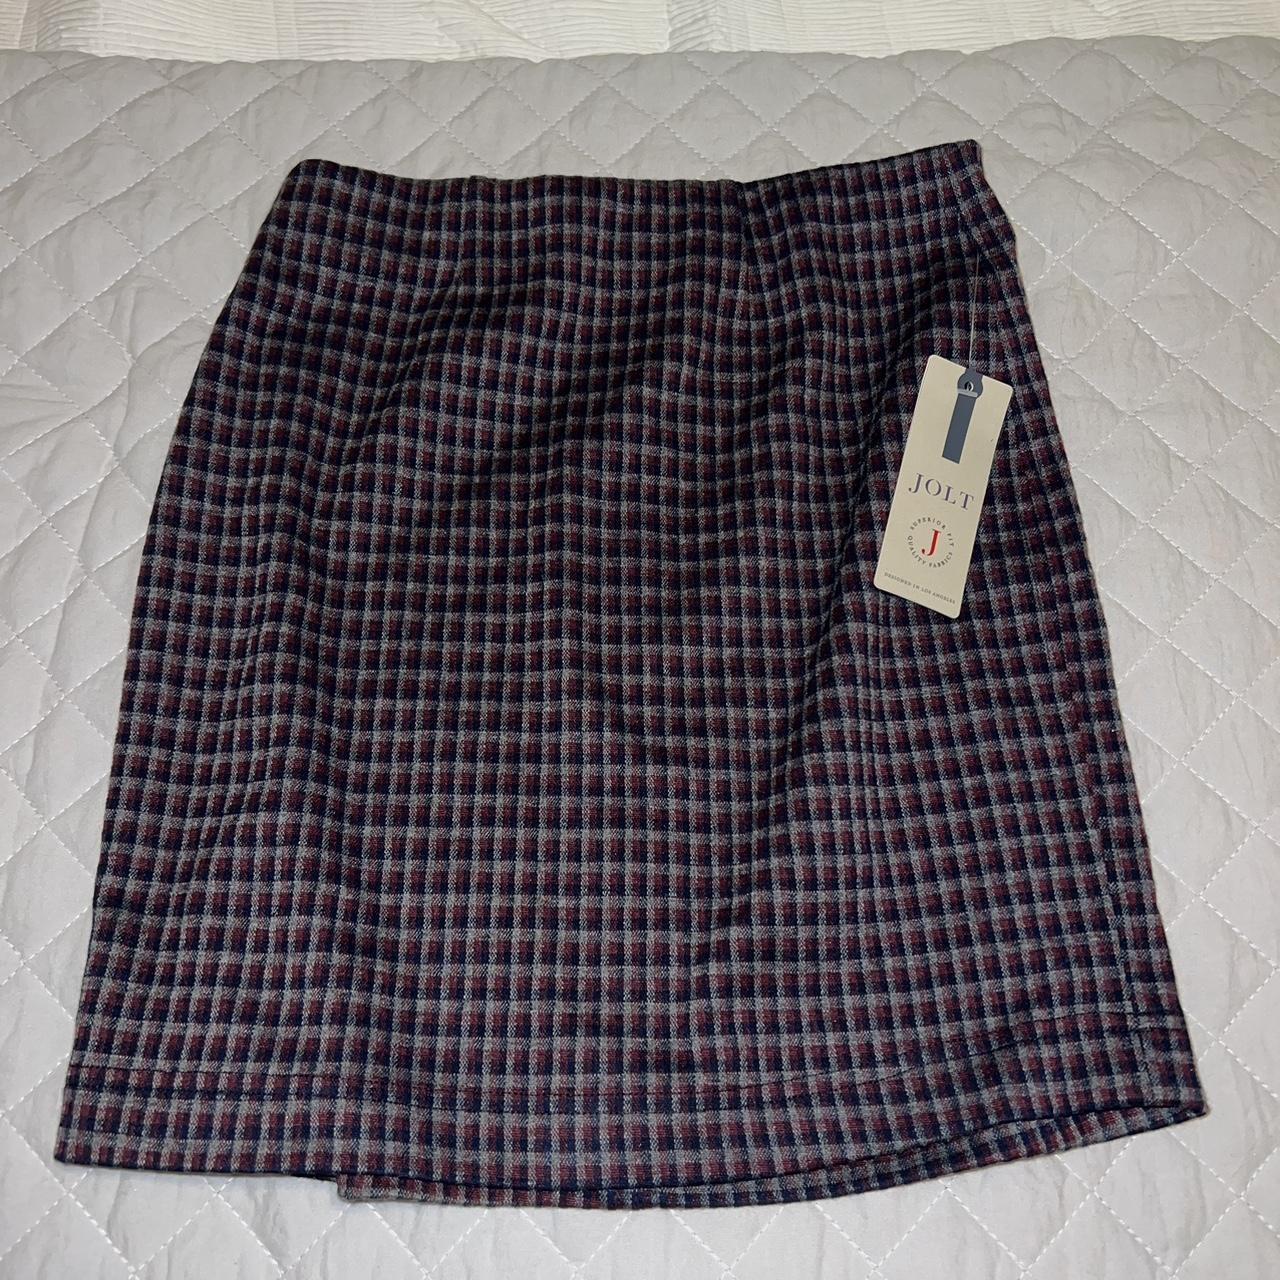 Mini plaid skirt size XS with tags still on it! - Depop